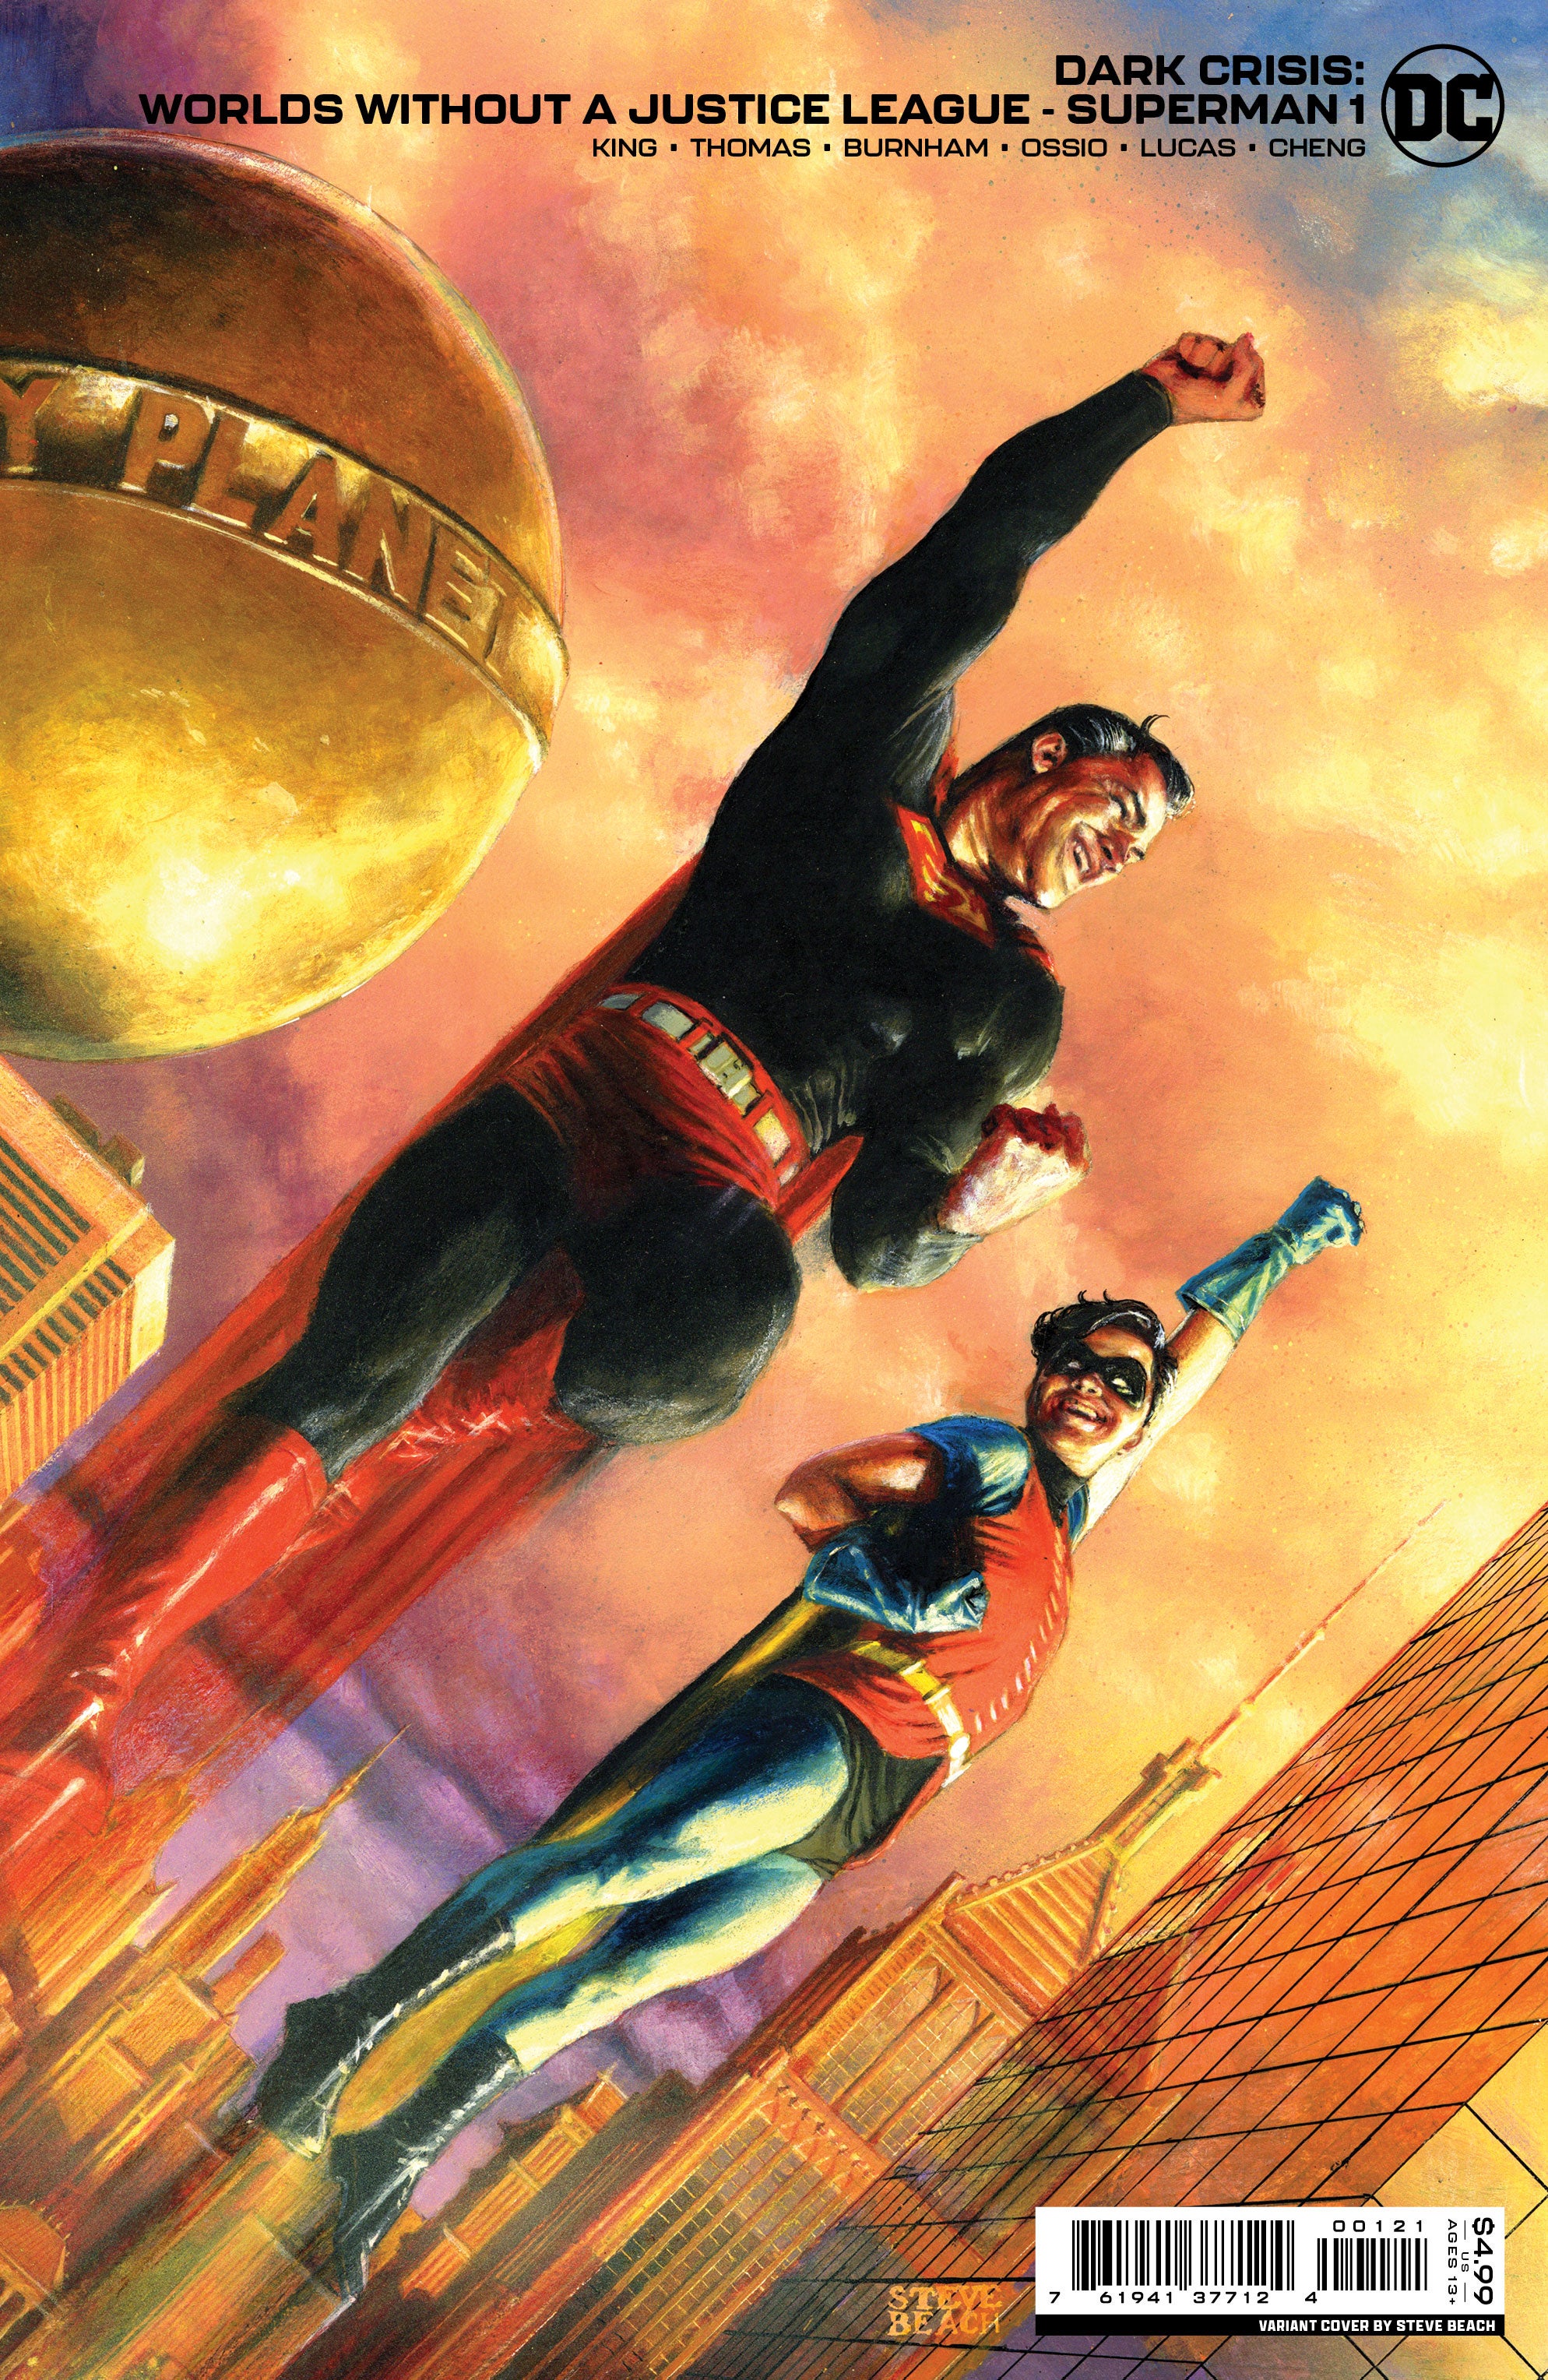 Variant cover of Superman flying alongside Jonathan Kent